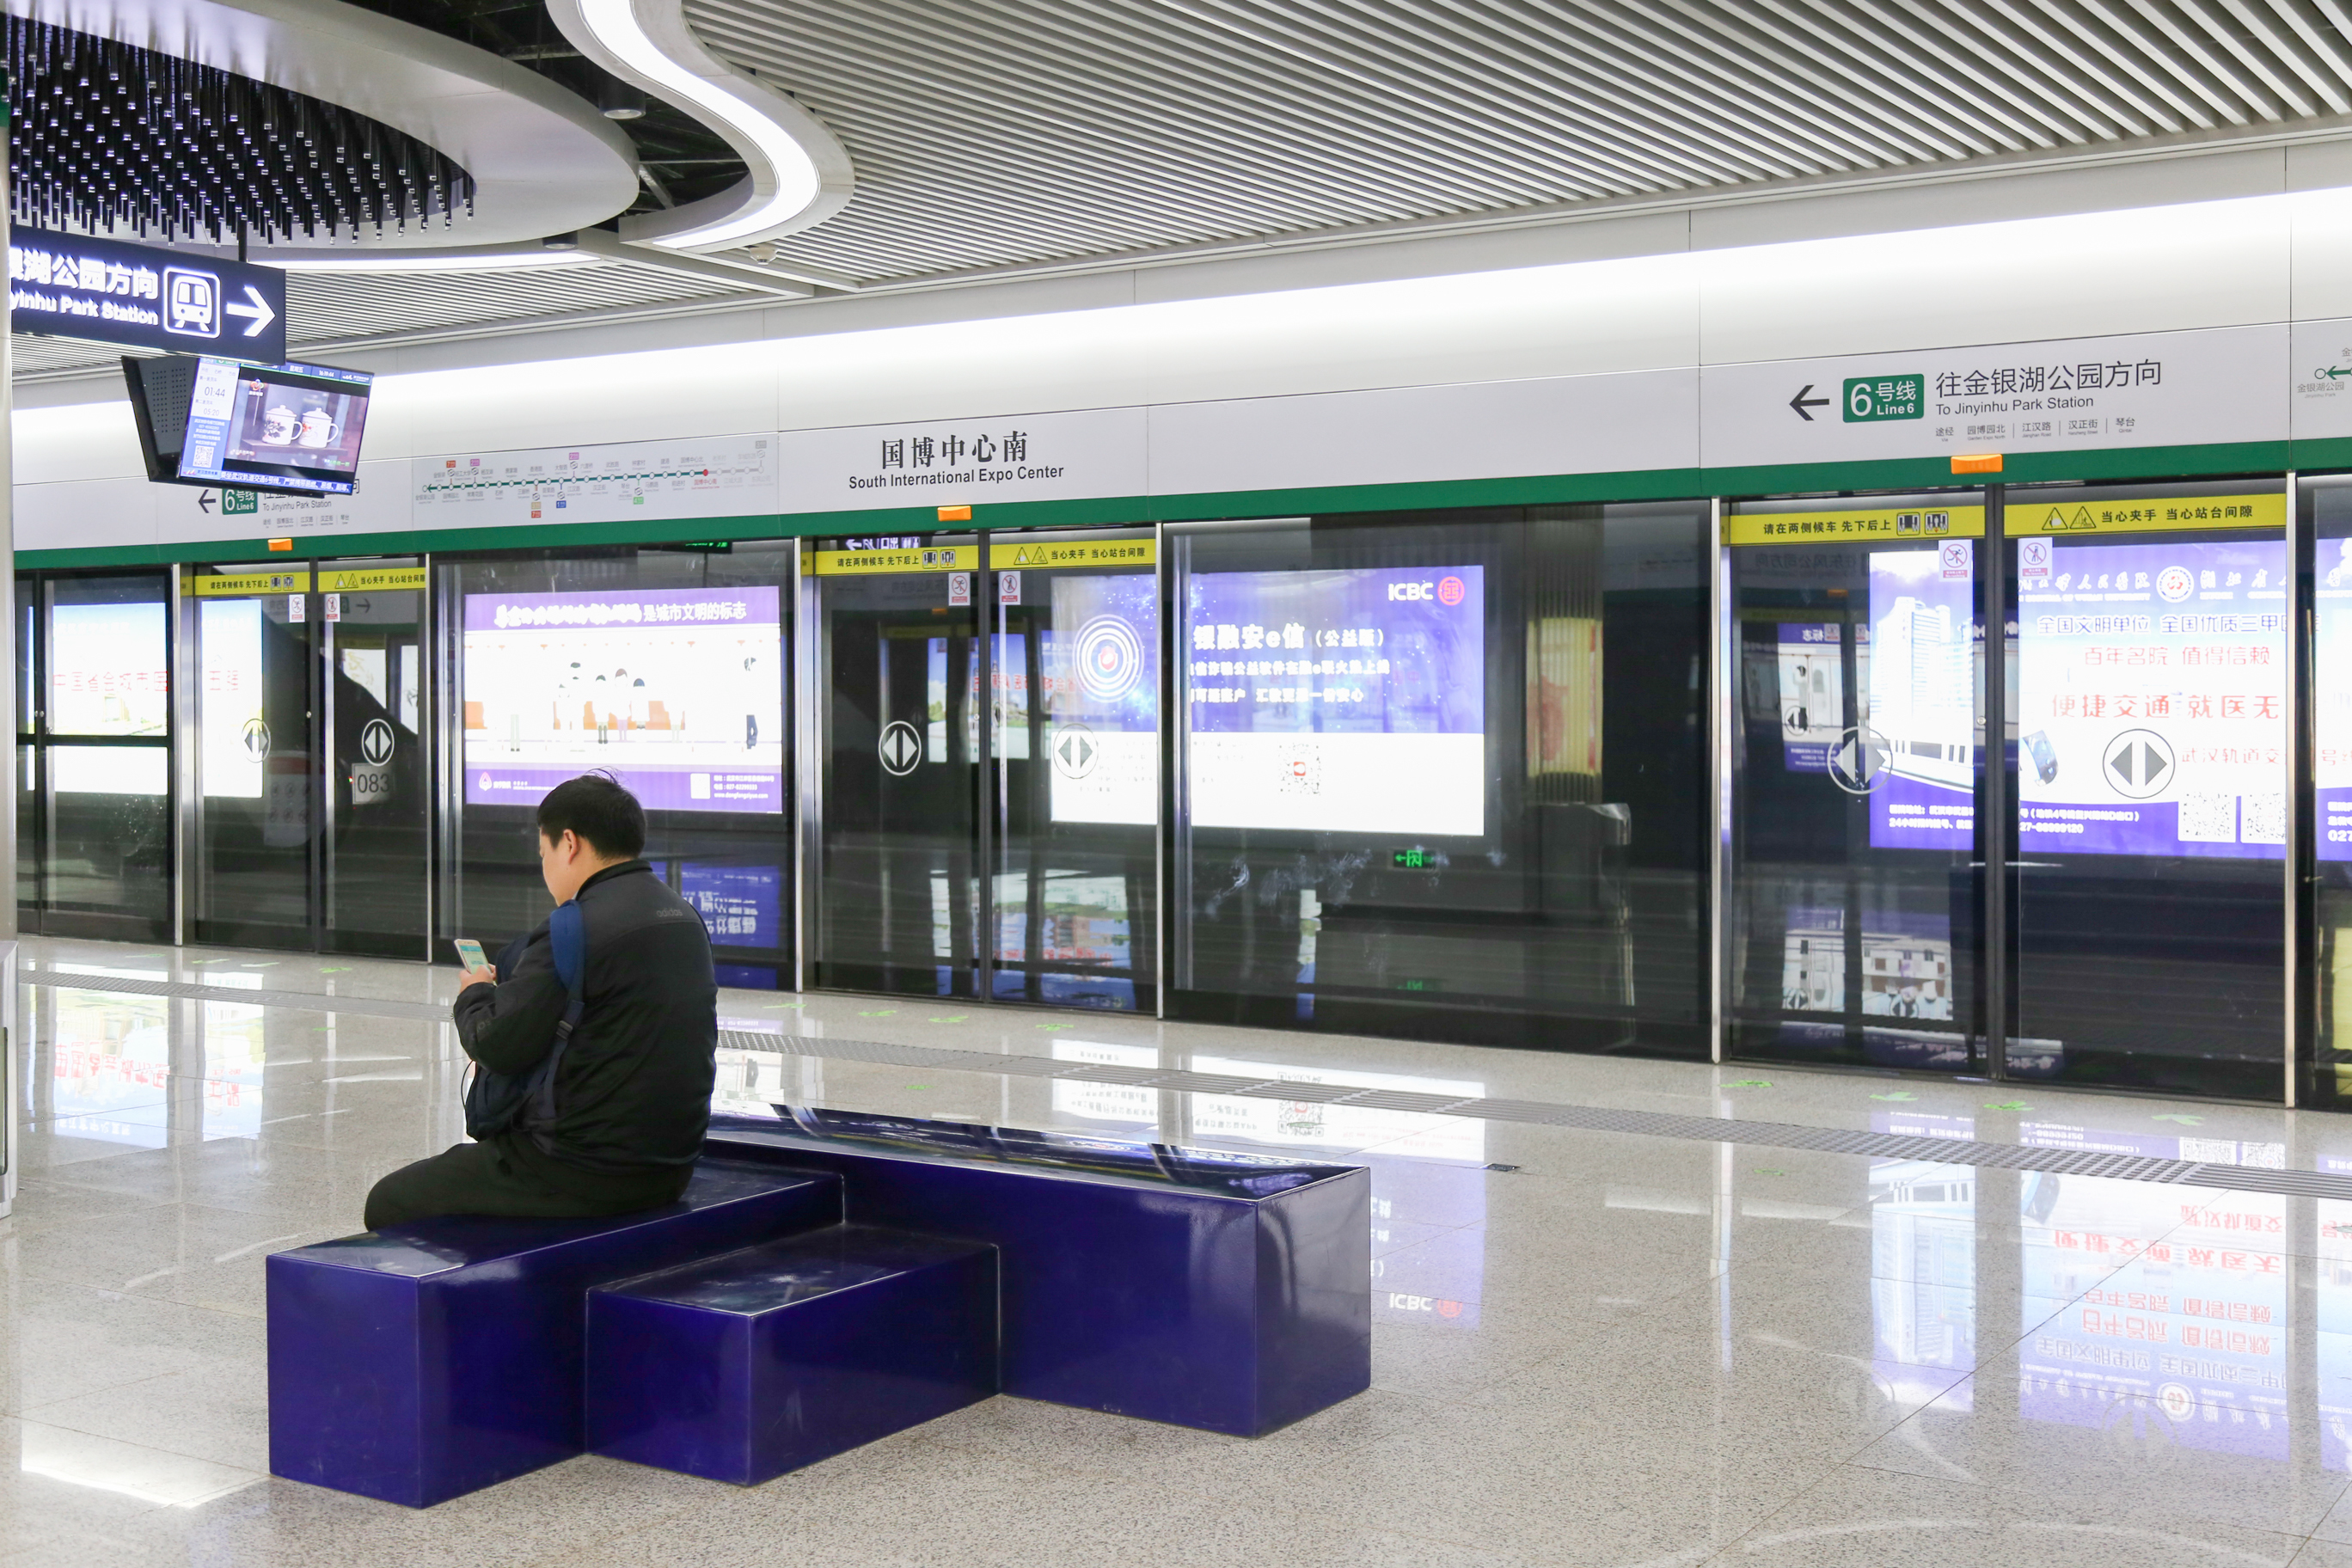 武汉地铁6号线,一条高颜值的艺术地铁